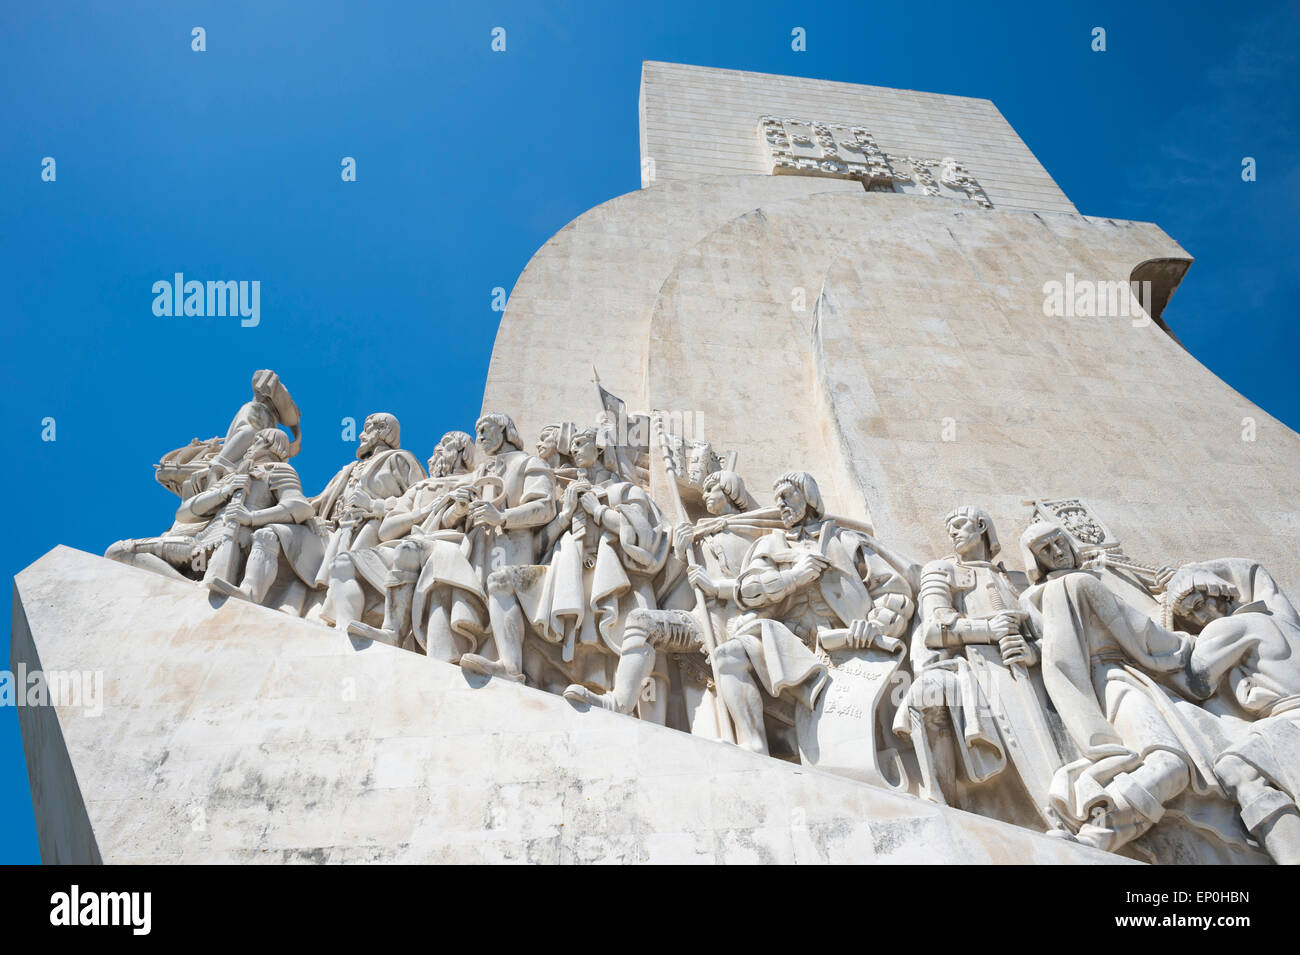 Padrao dos Descobrimentos, mémorial de marin, l'âge de la découverte, Belem sur le Tage, Lisbonne, Portugal Banque D'Images